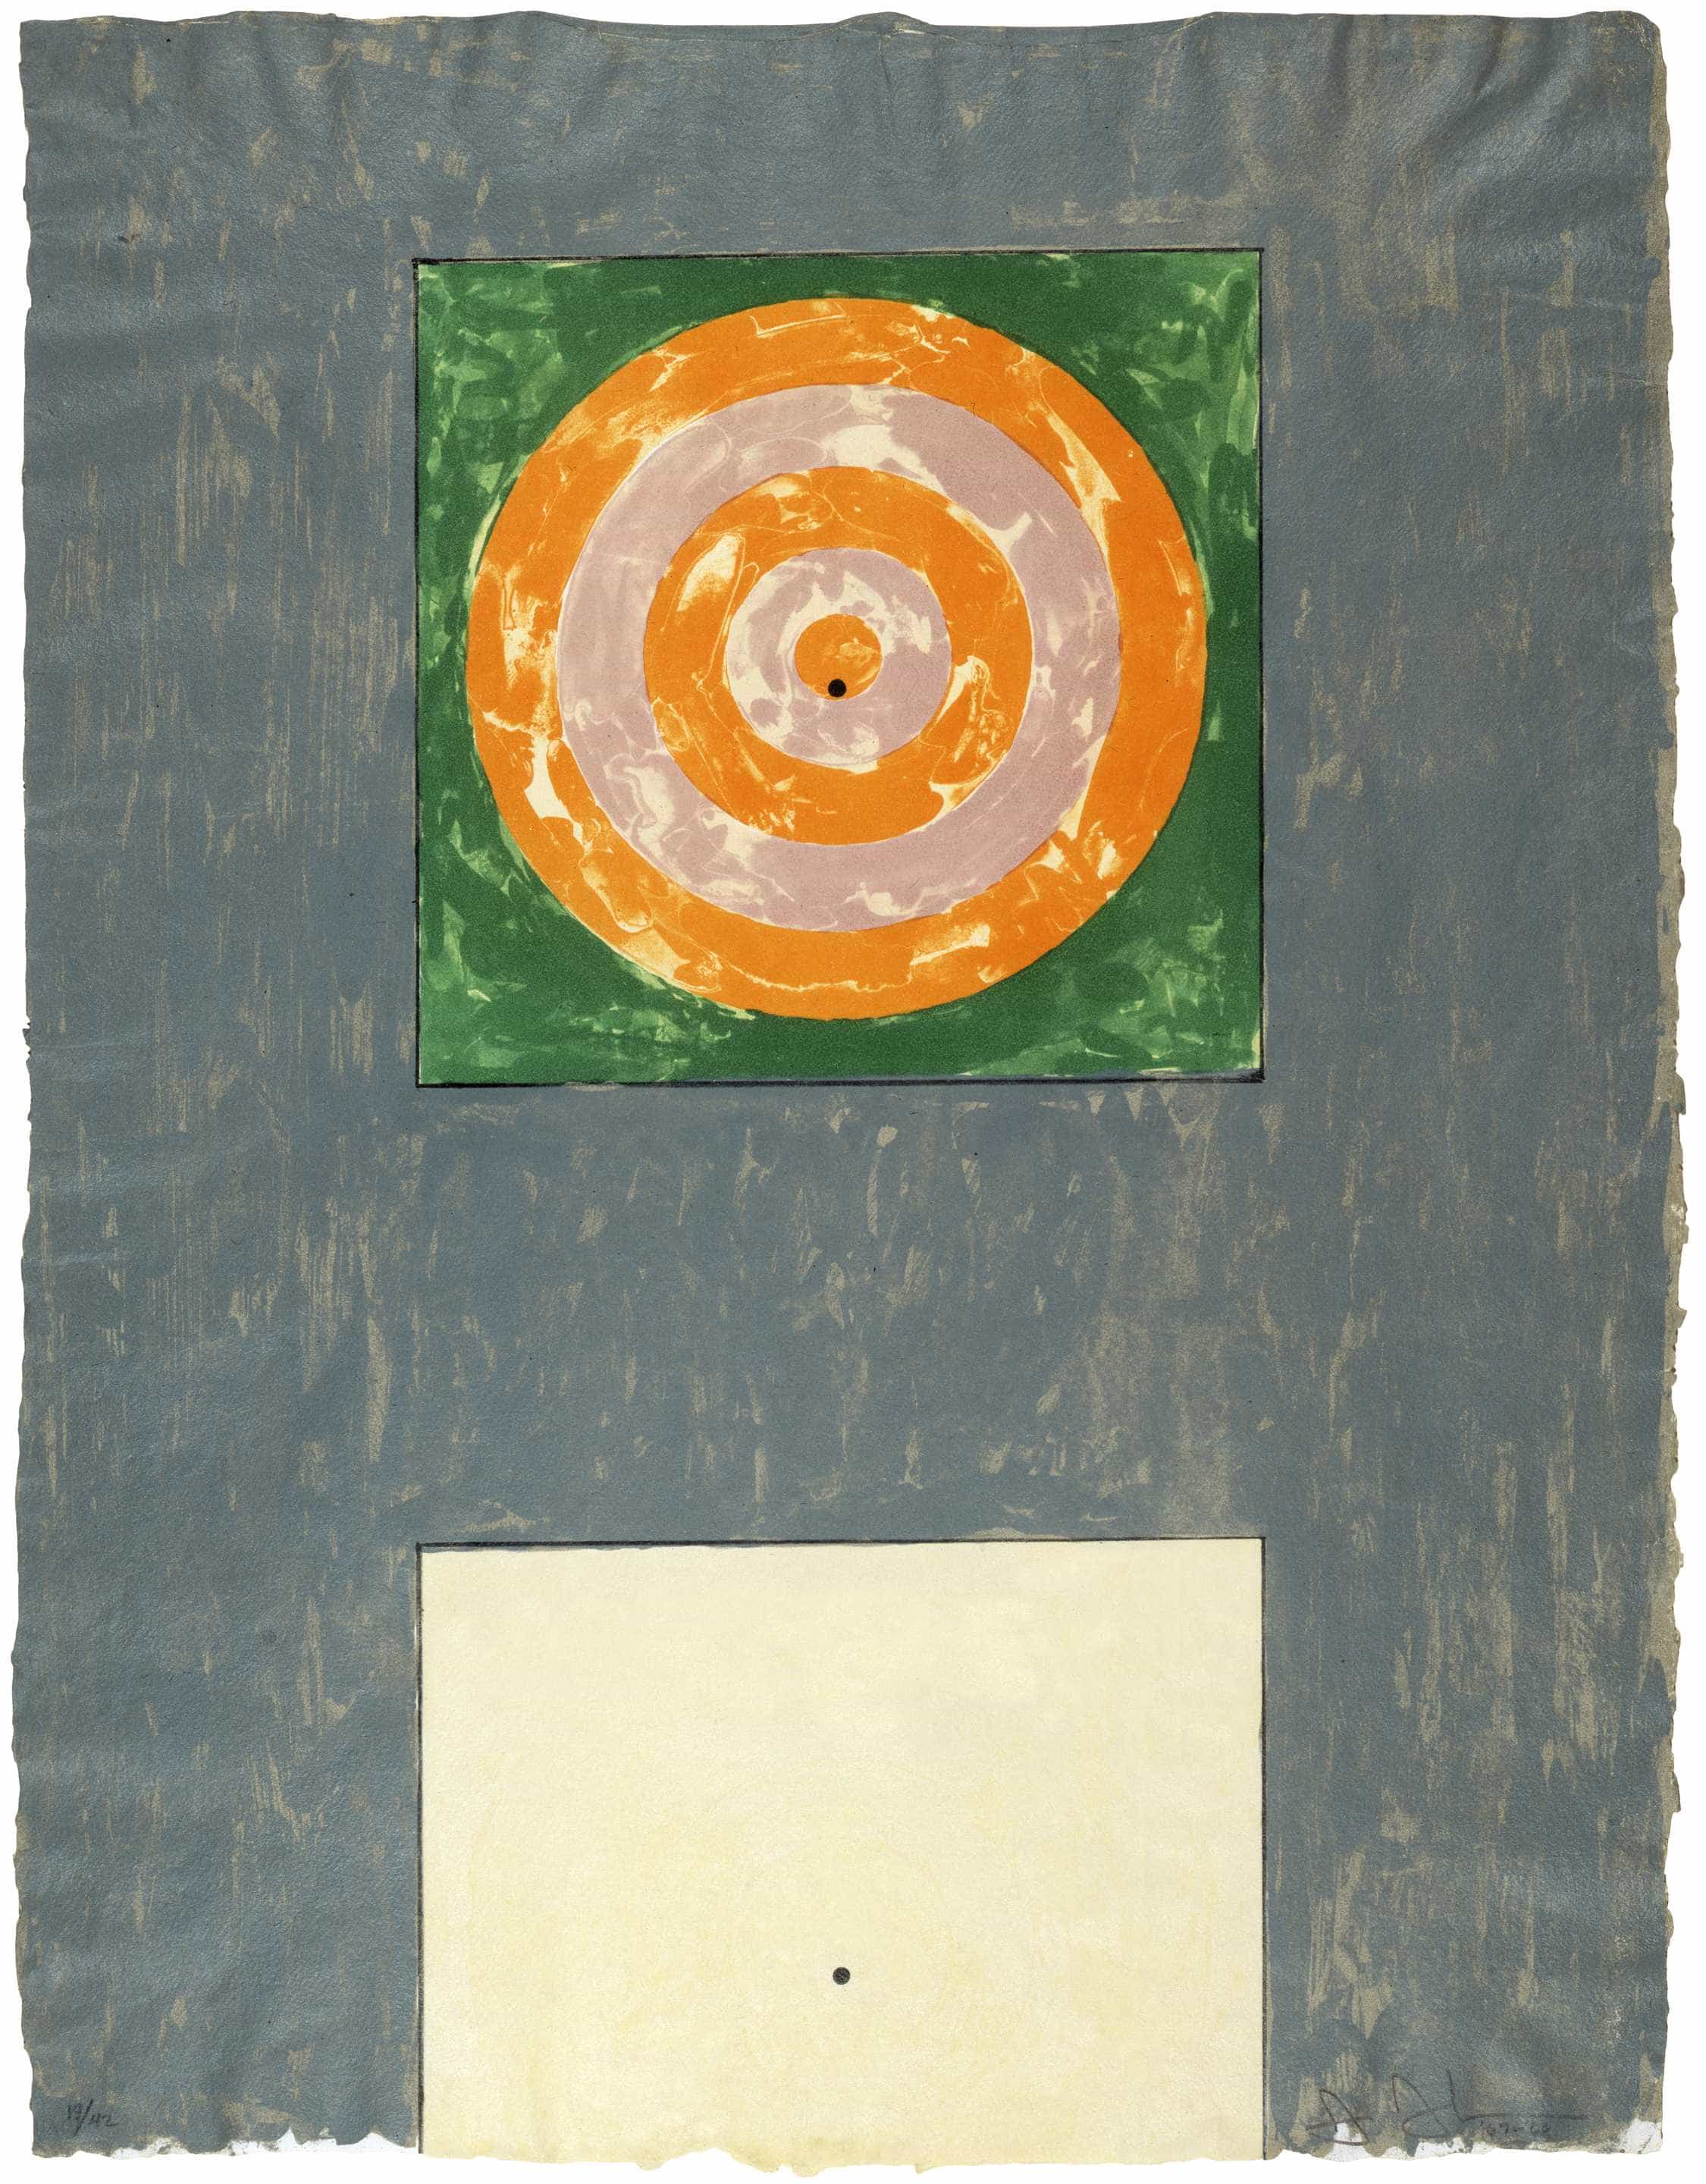 Jasper Johns, Targets, 1967-68